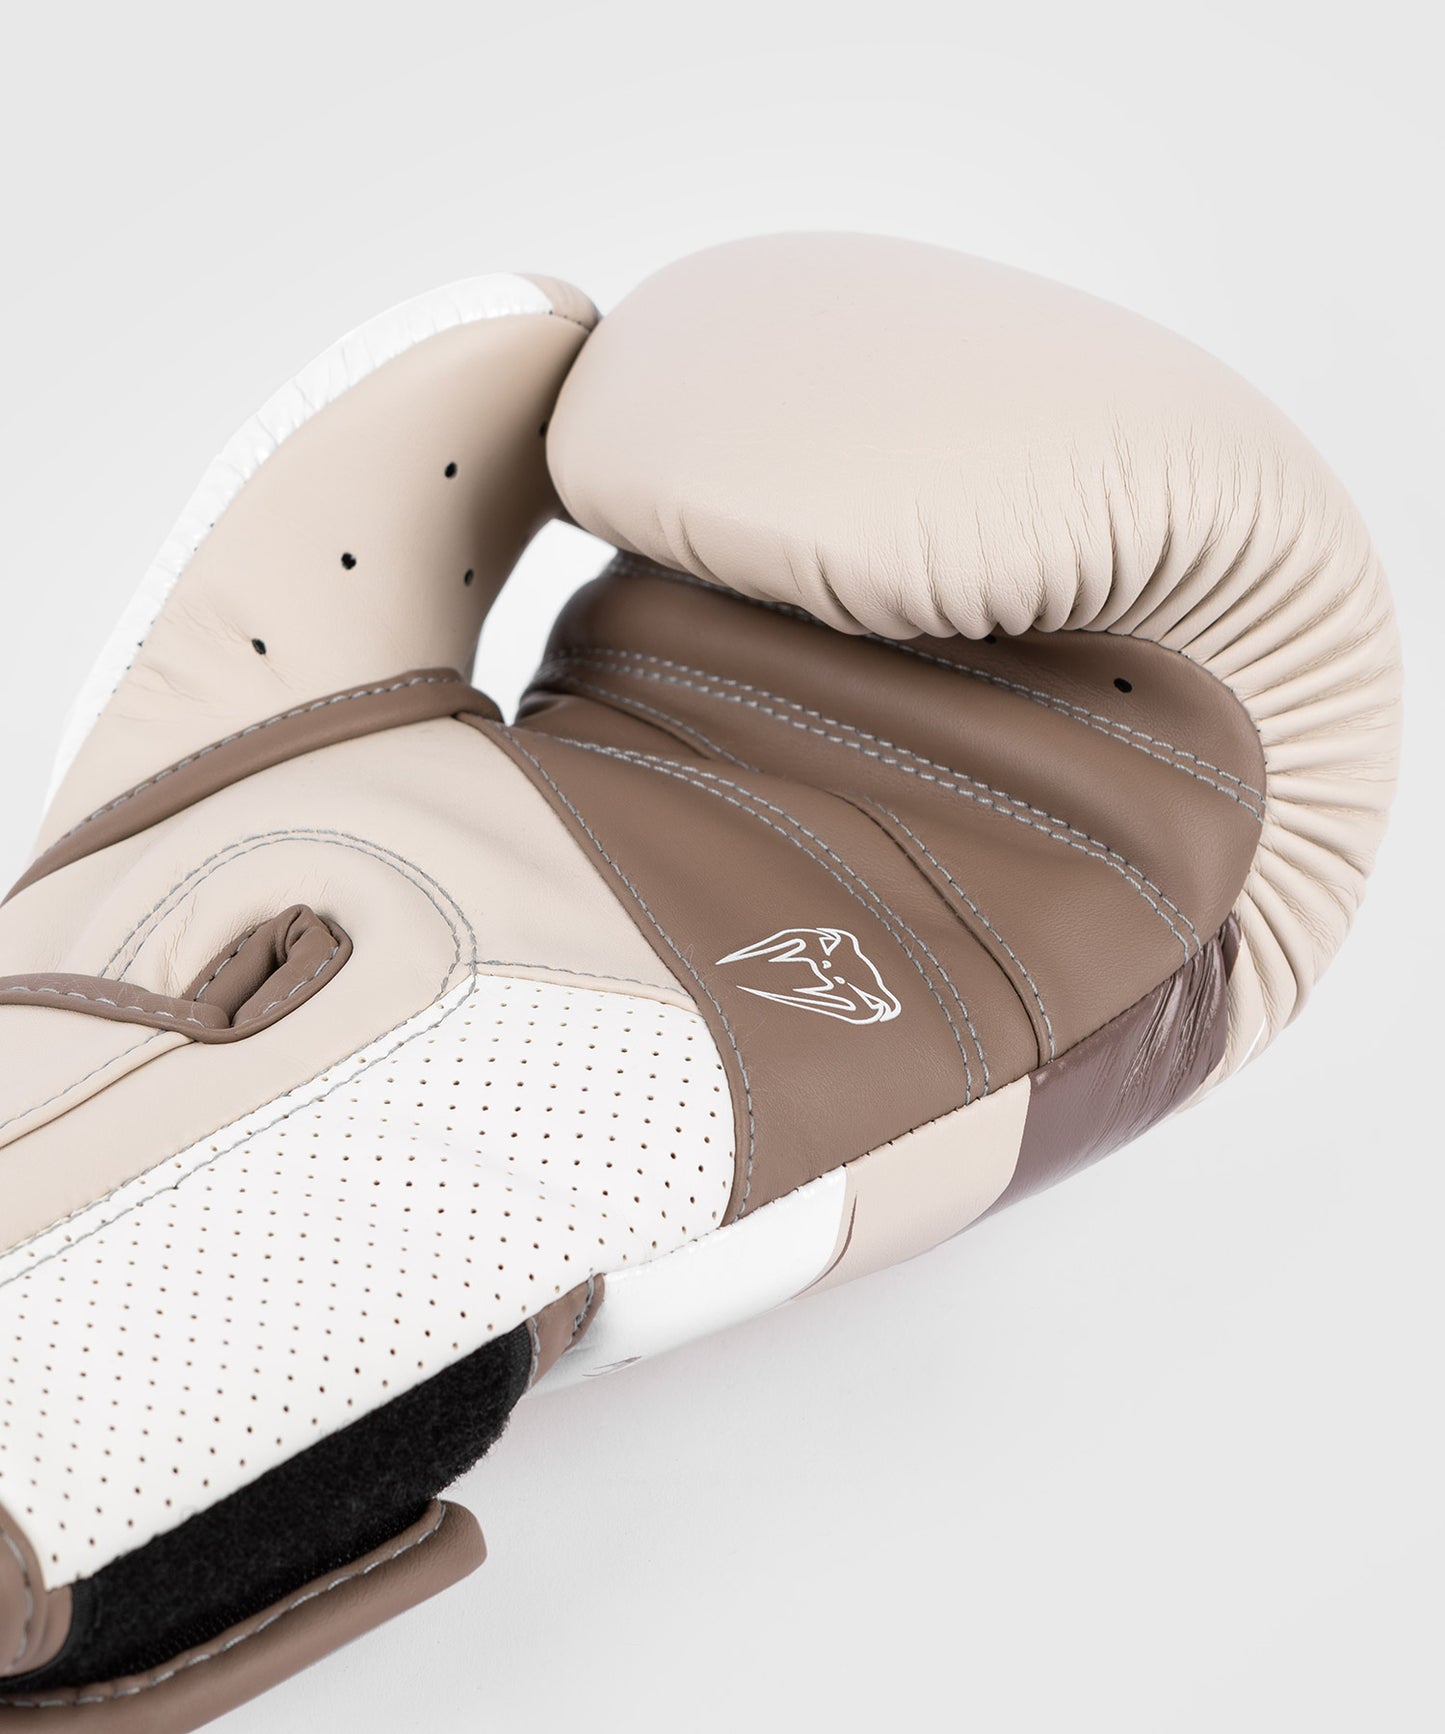 Боксерские перчатки Venum Elite Evo - песок